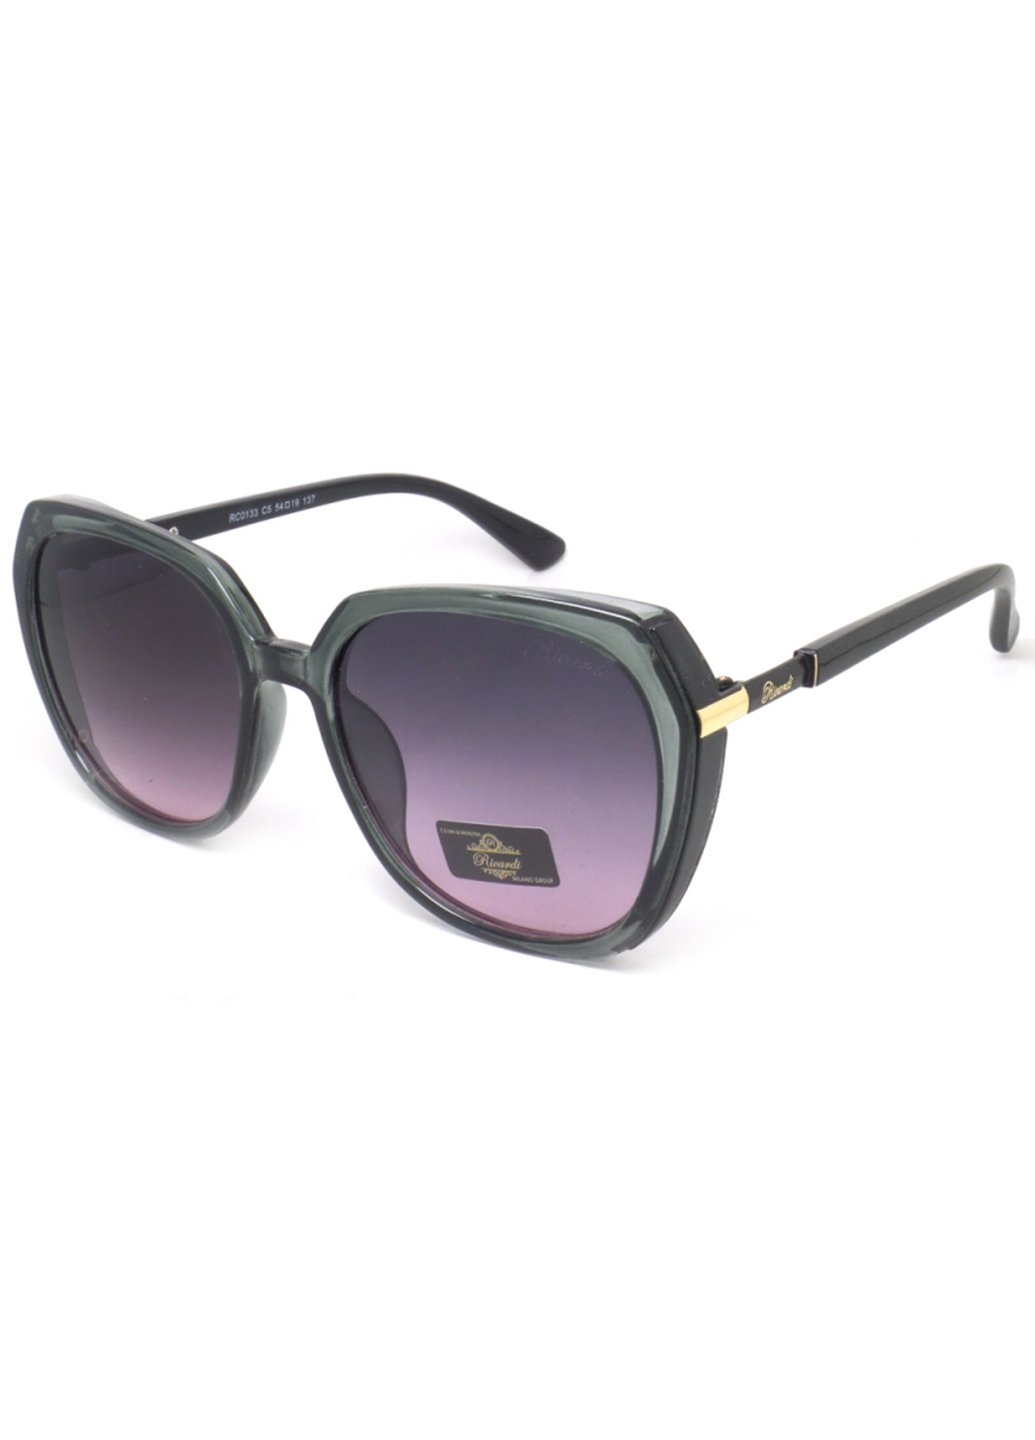 Купить Женские солнцезащитные очки Ricardi RC0133 110020 - Фиолетовый в интернет-магазине